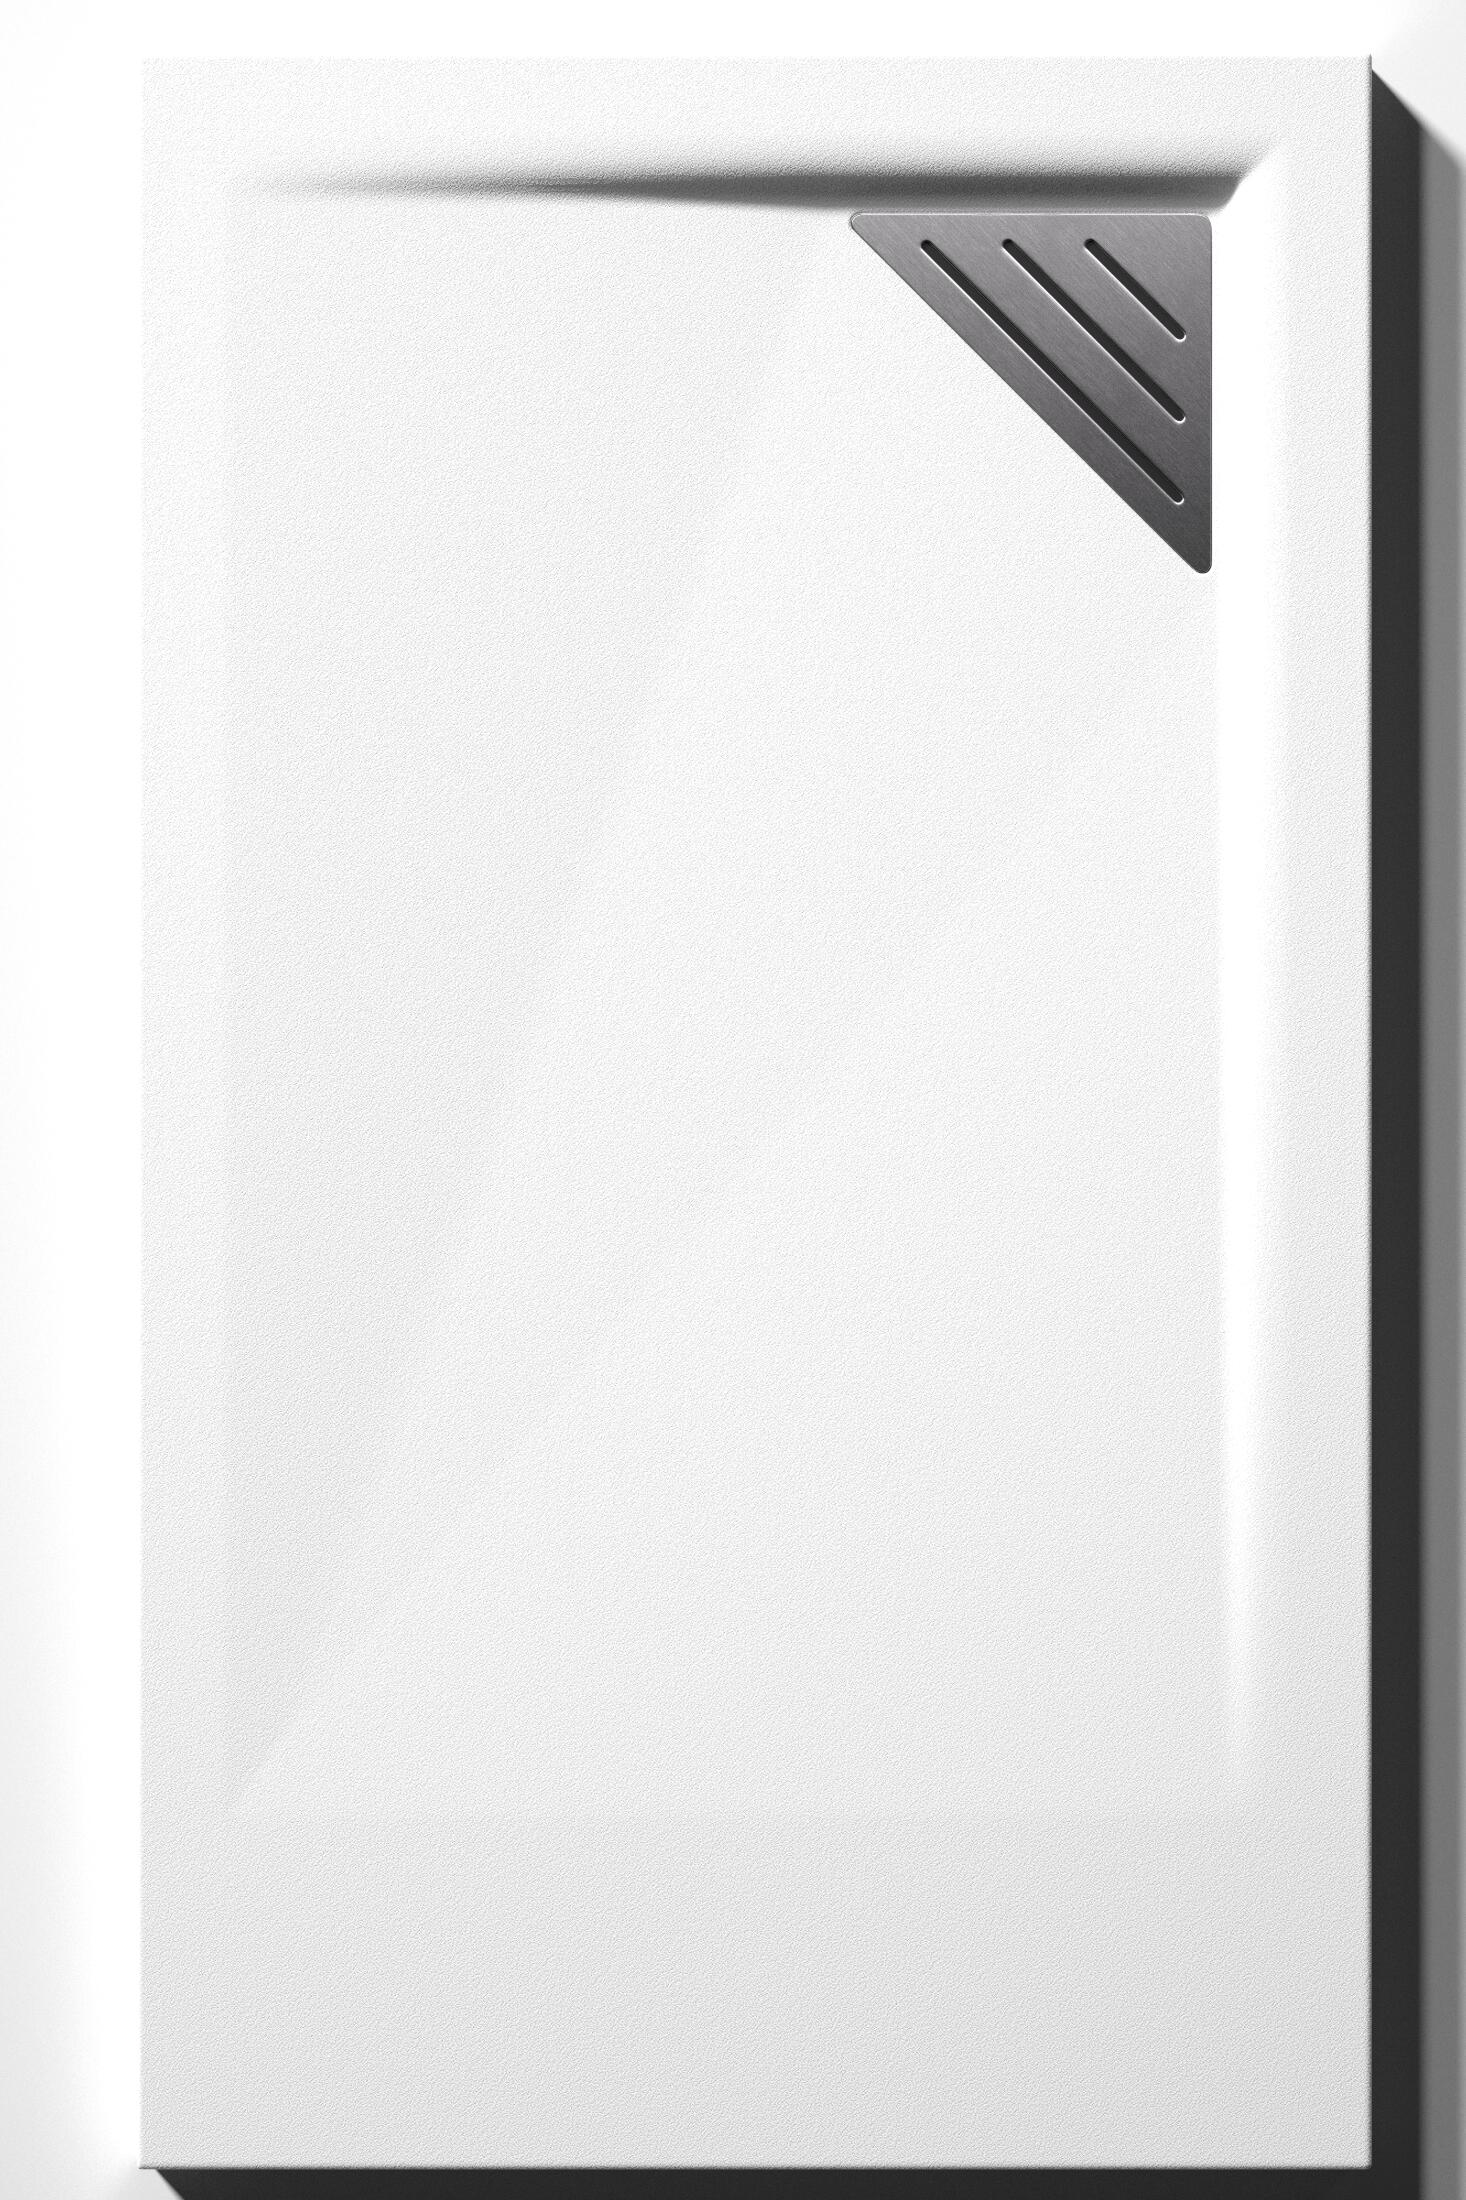 Plato de ducha meet 210x80 cm blanco